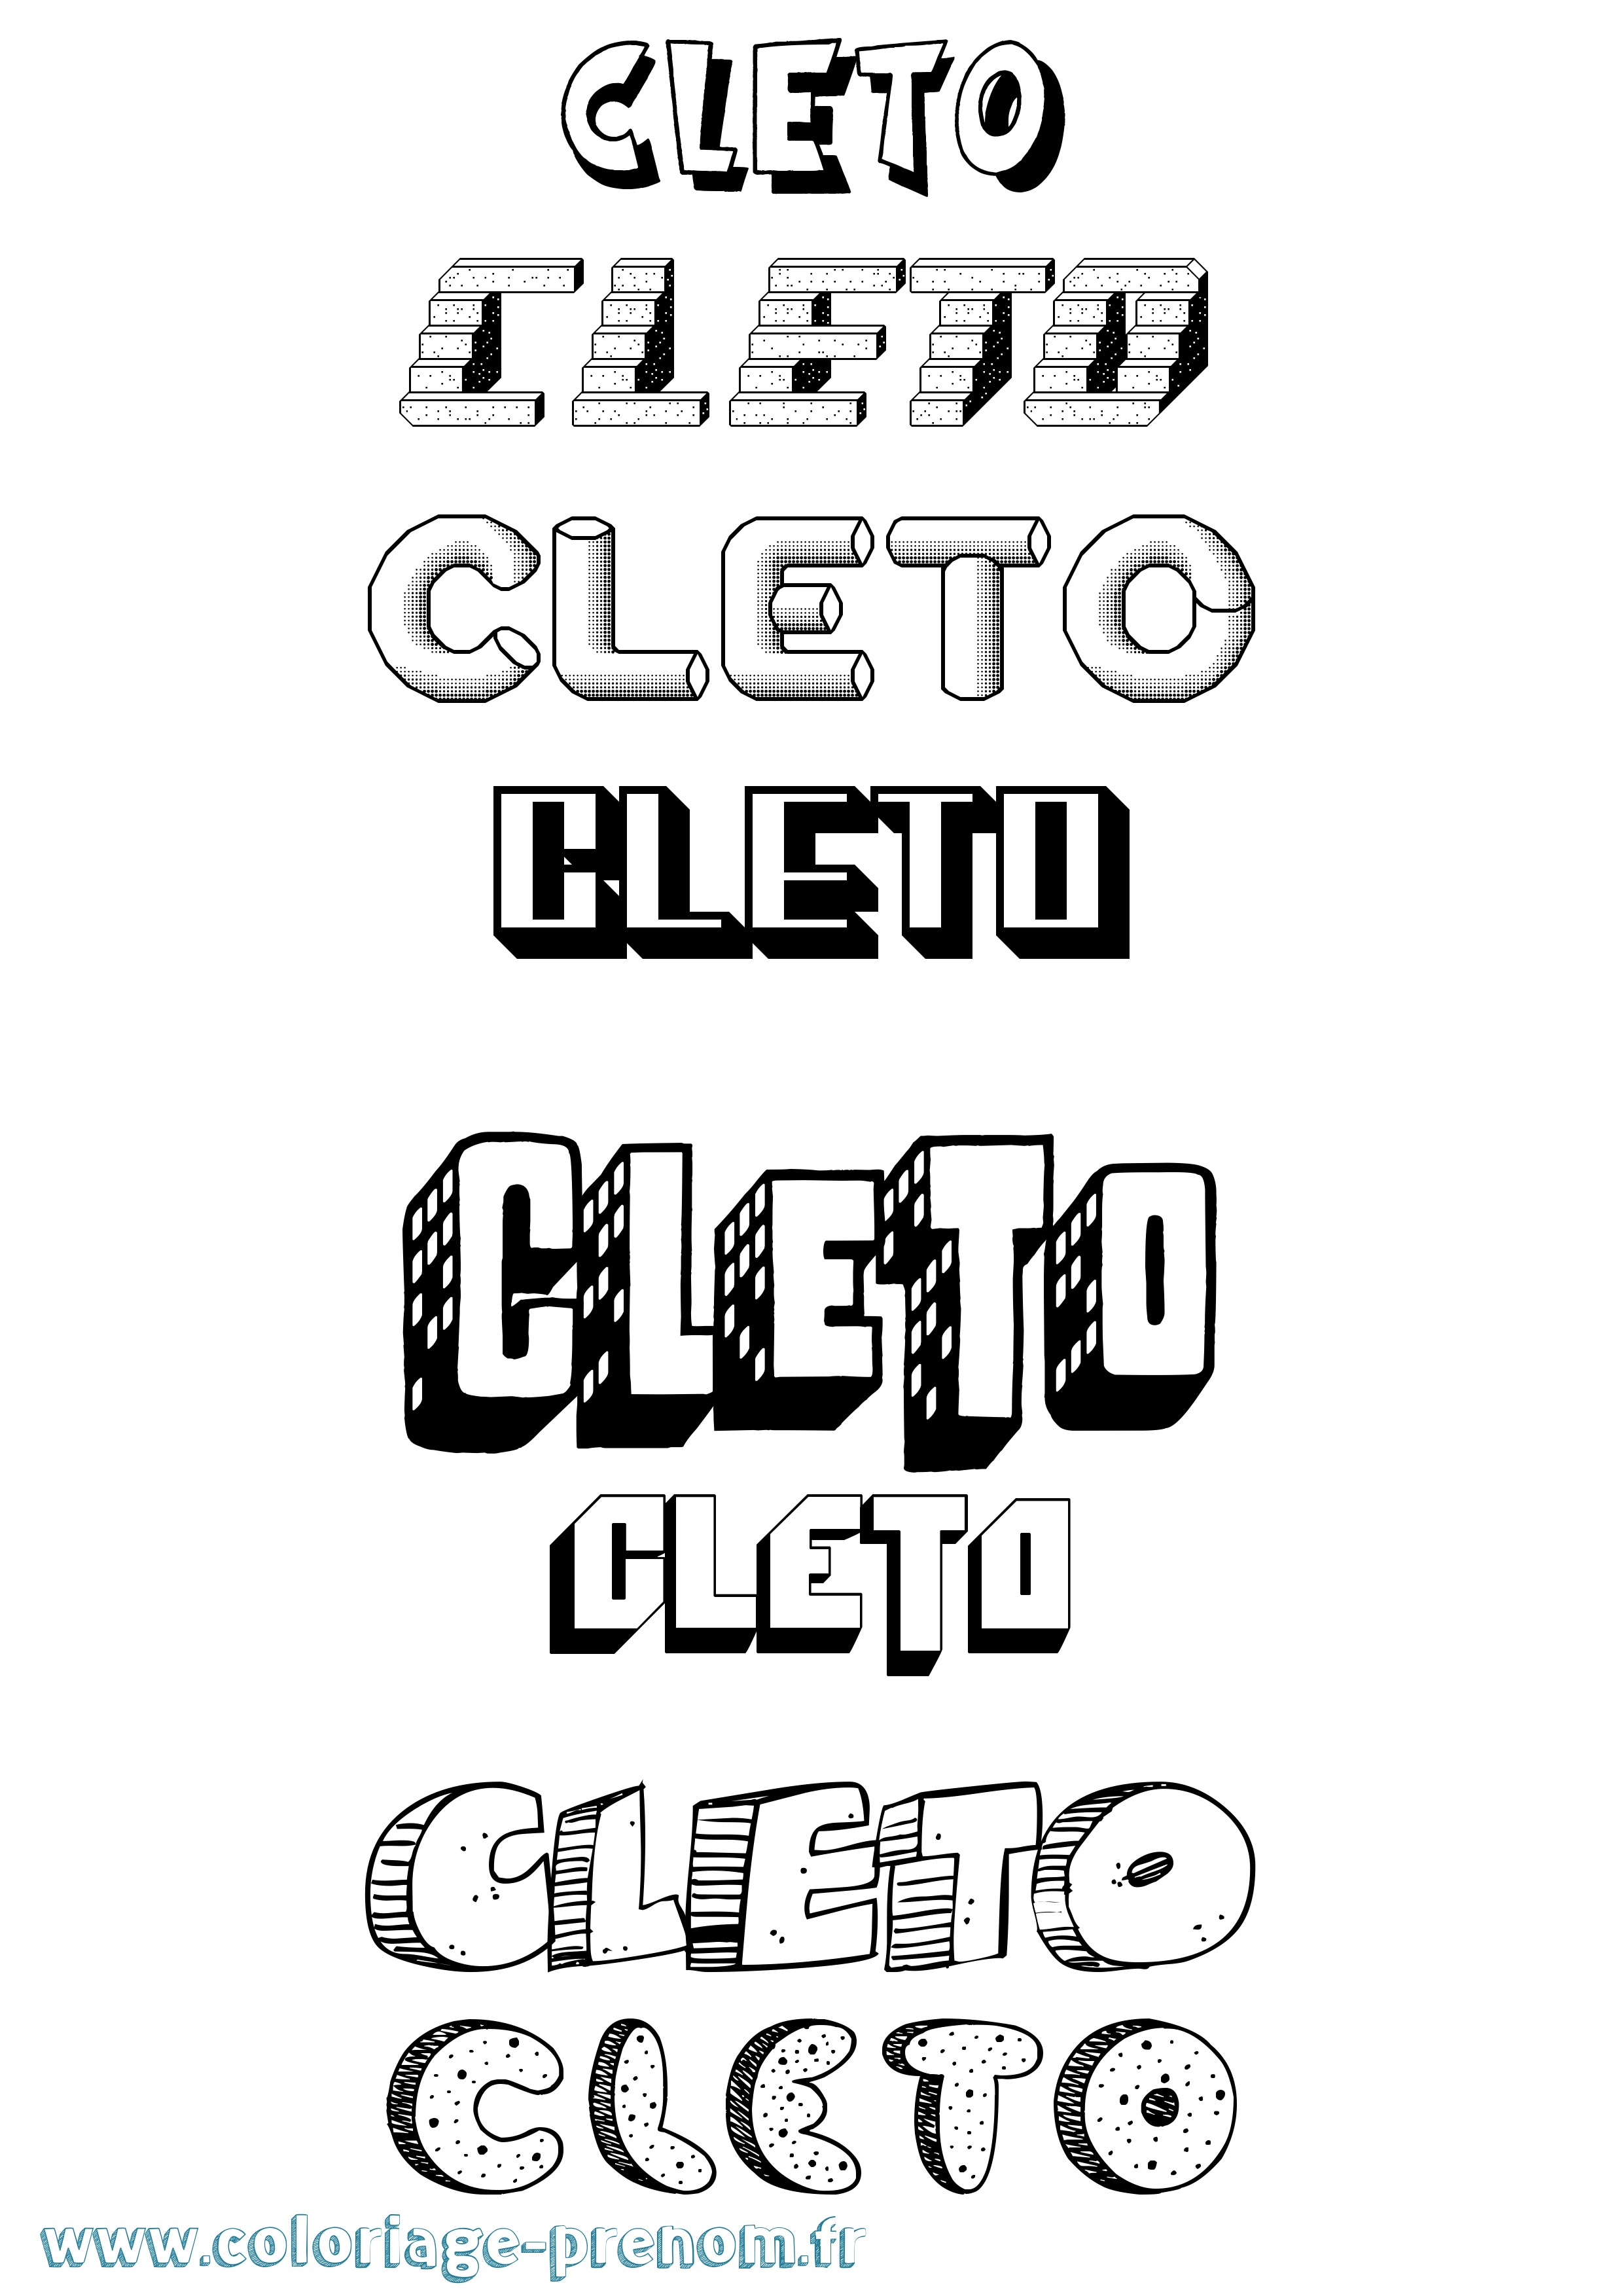 Coloriage prénom Cleto Effet 3D